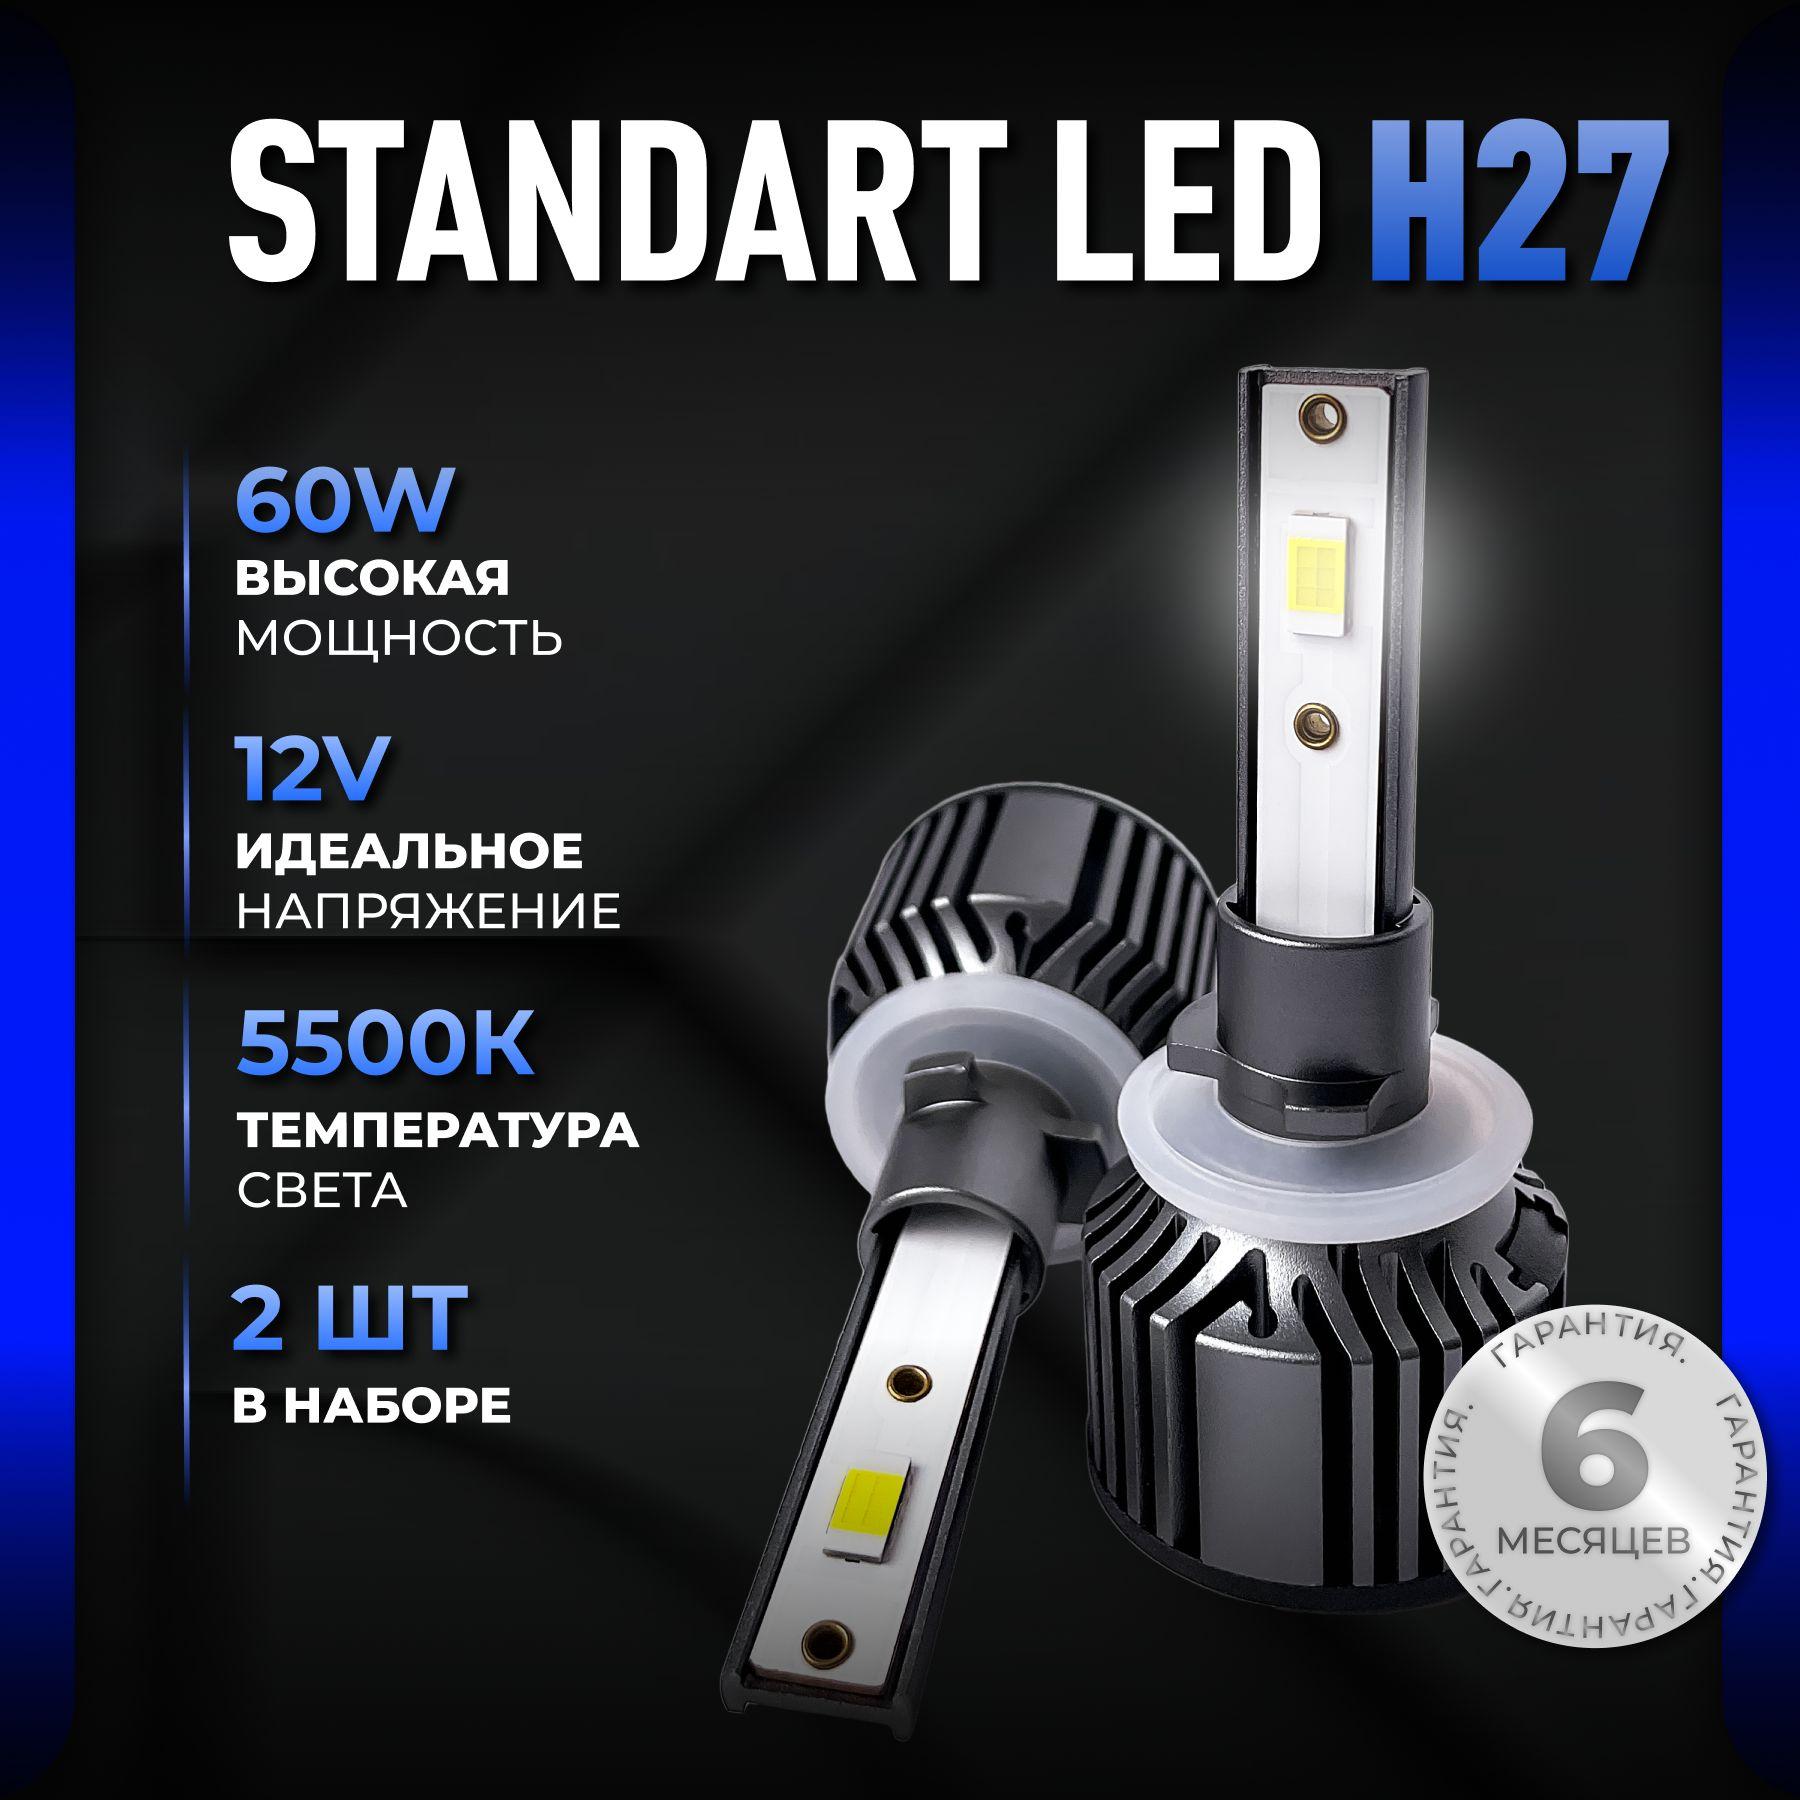 ALISTARM | Светодиодные лампы H27, диодные лампы H27 led, 5500к